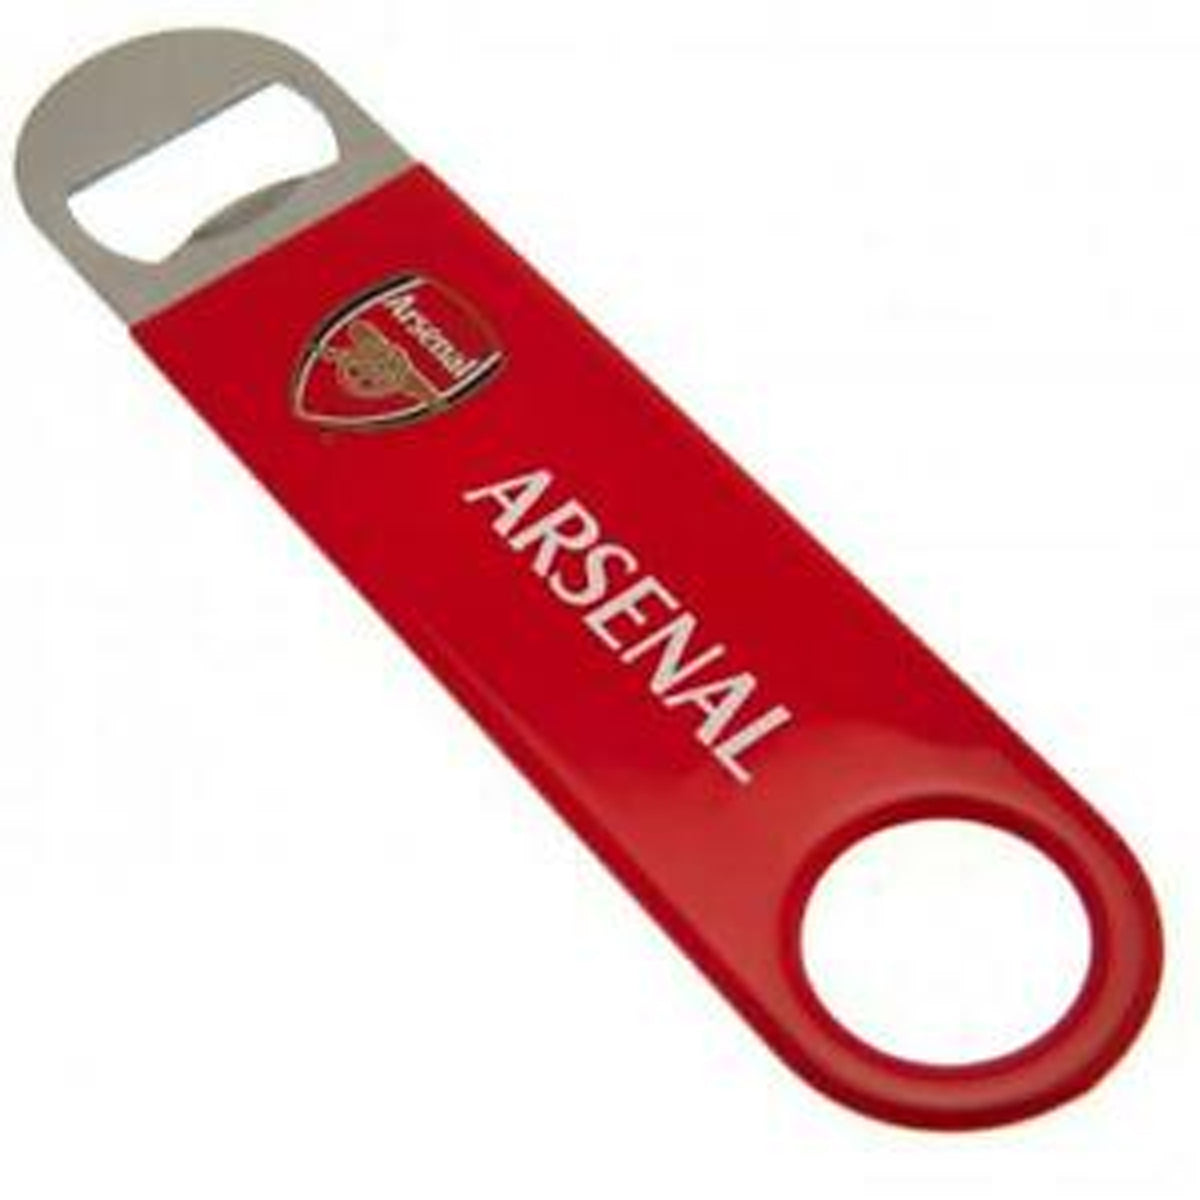 Arsenal Fc Stainless Steel Bottle Opener Magnet